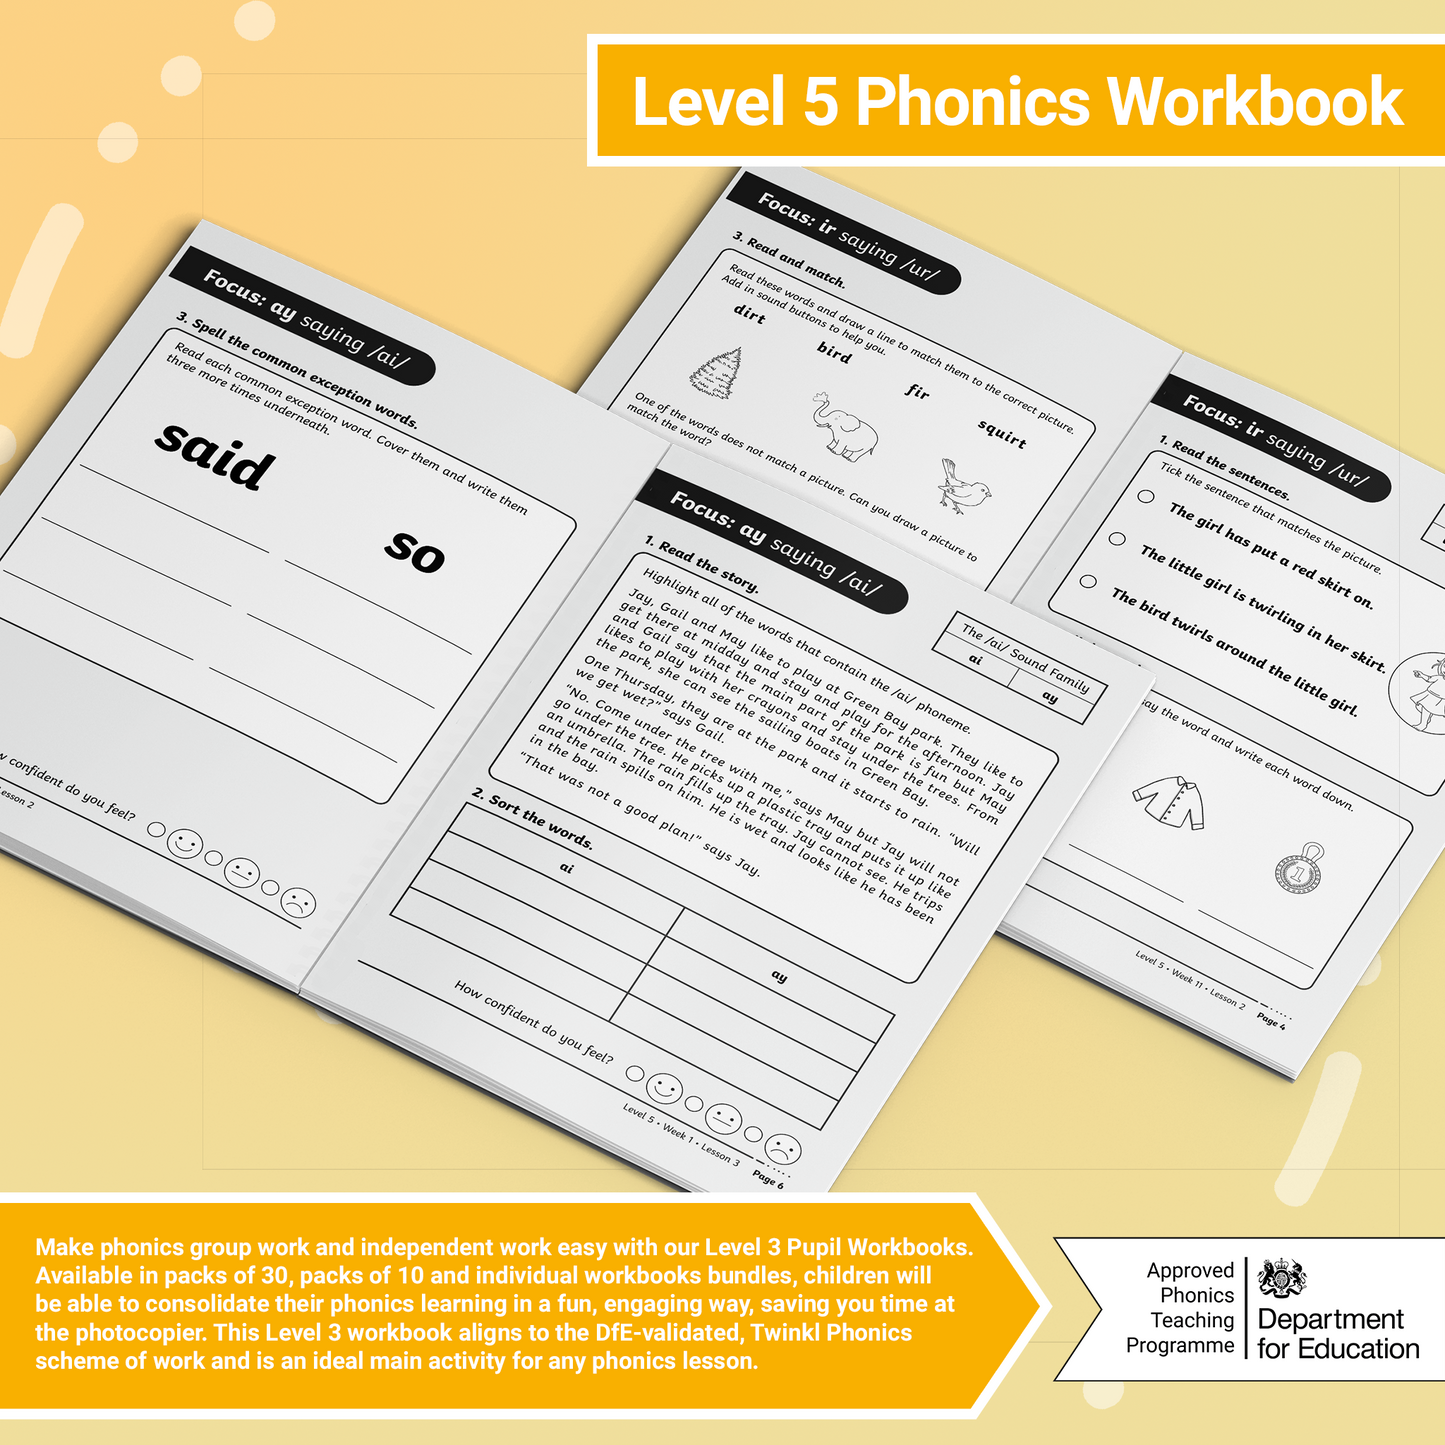 Twinkl Phonics – Level 5 Workbooks